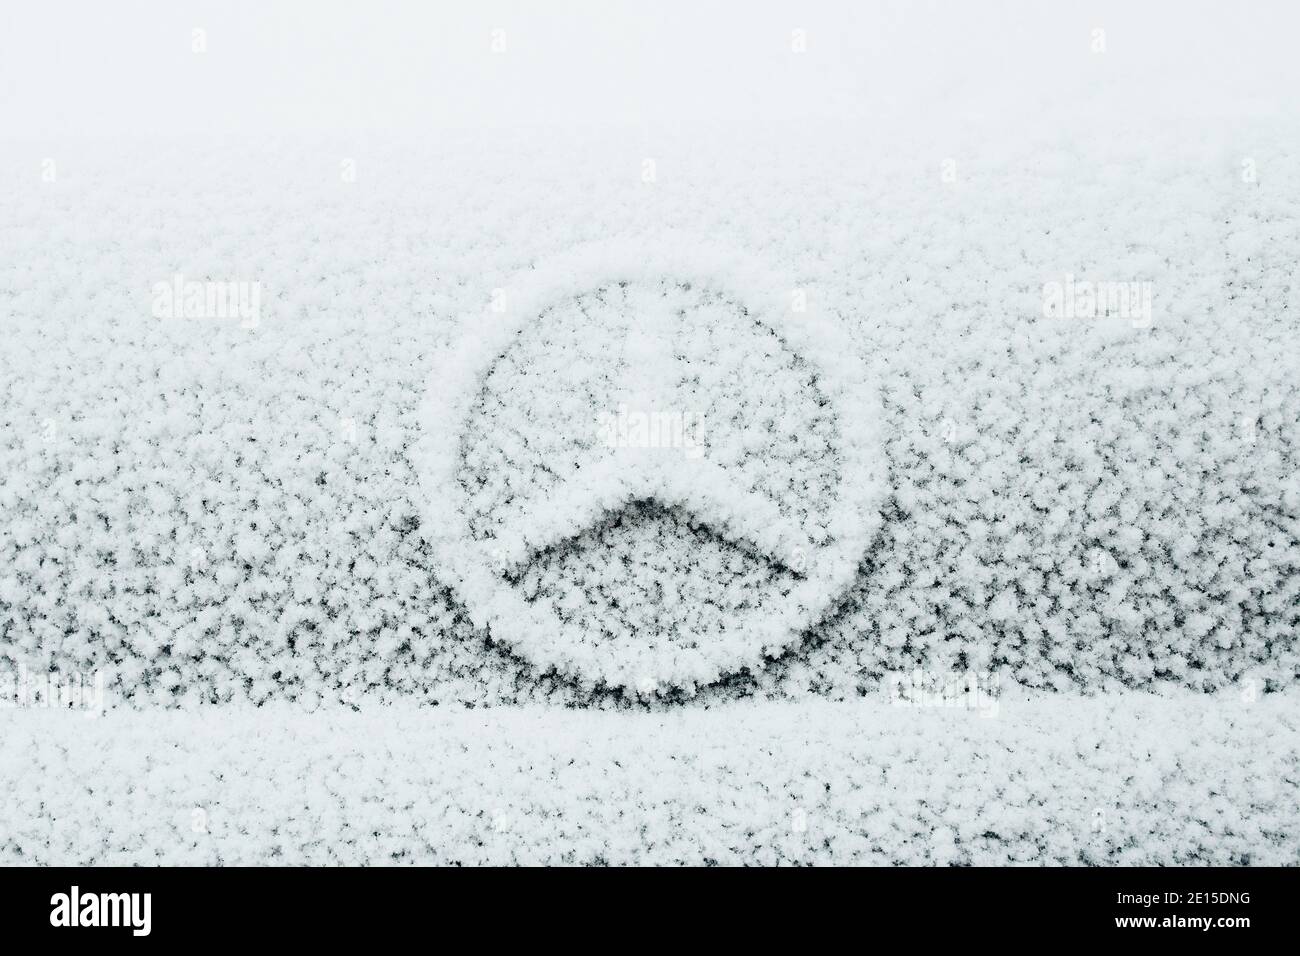 Minsk, Bélarus – 21 décembre 2020 : gel et glace sur une voiture en hiver dans des conditions de gel sévères - humidité élevée Banque D'Images